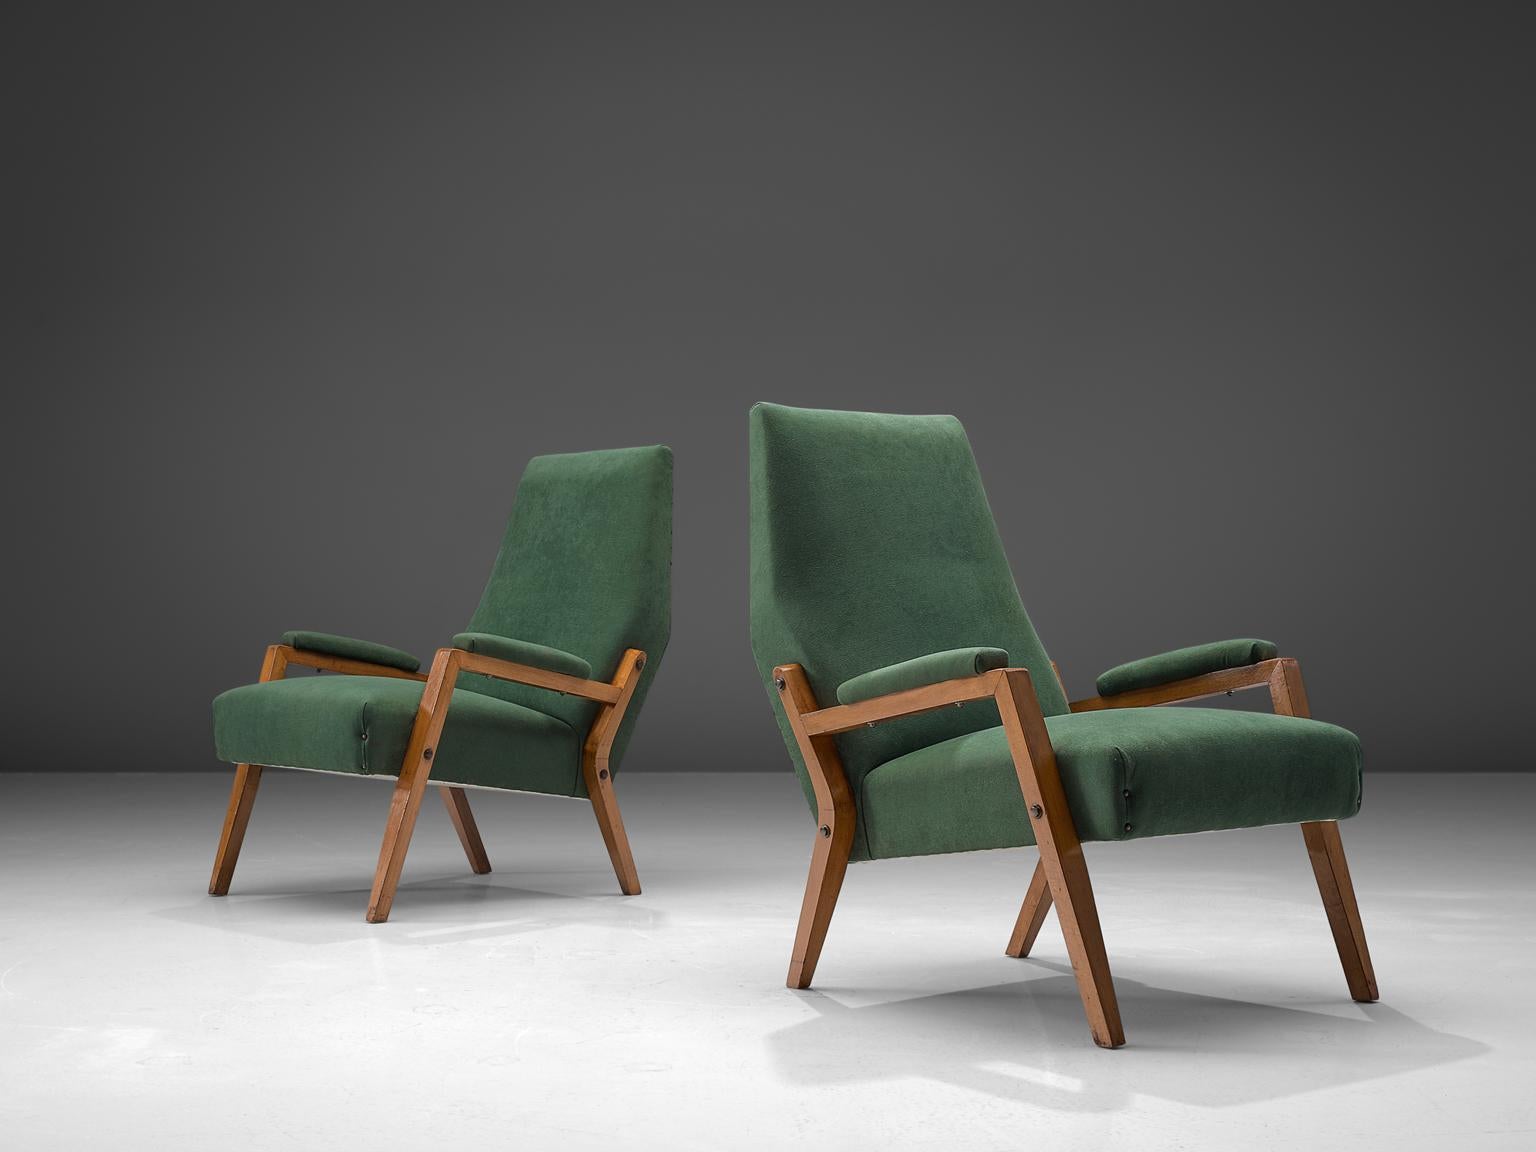 Paar Sessel, Stoff, gebeizte Buche, Metall, Italien, 1950er Jahre

Dieses außergewöhnliche, in Italien entworfene und gefertigte Sesselpaar zeichnet sich durch seine ausgeprägte Geometrie und die harmonische Mischung von Texturen und Materialien